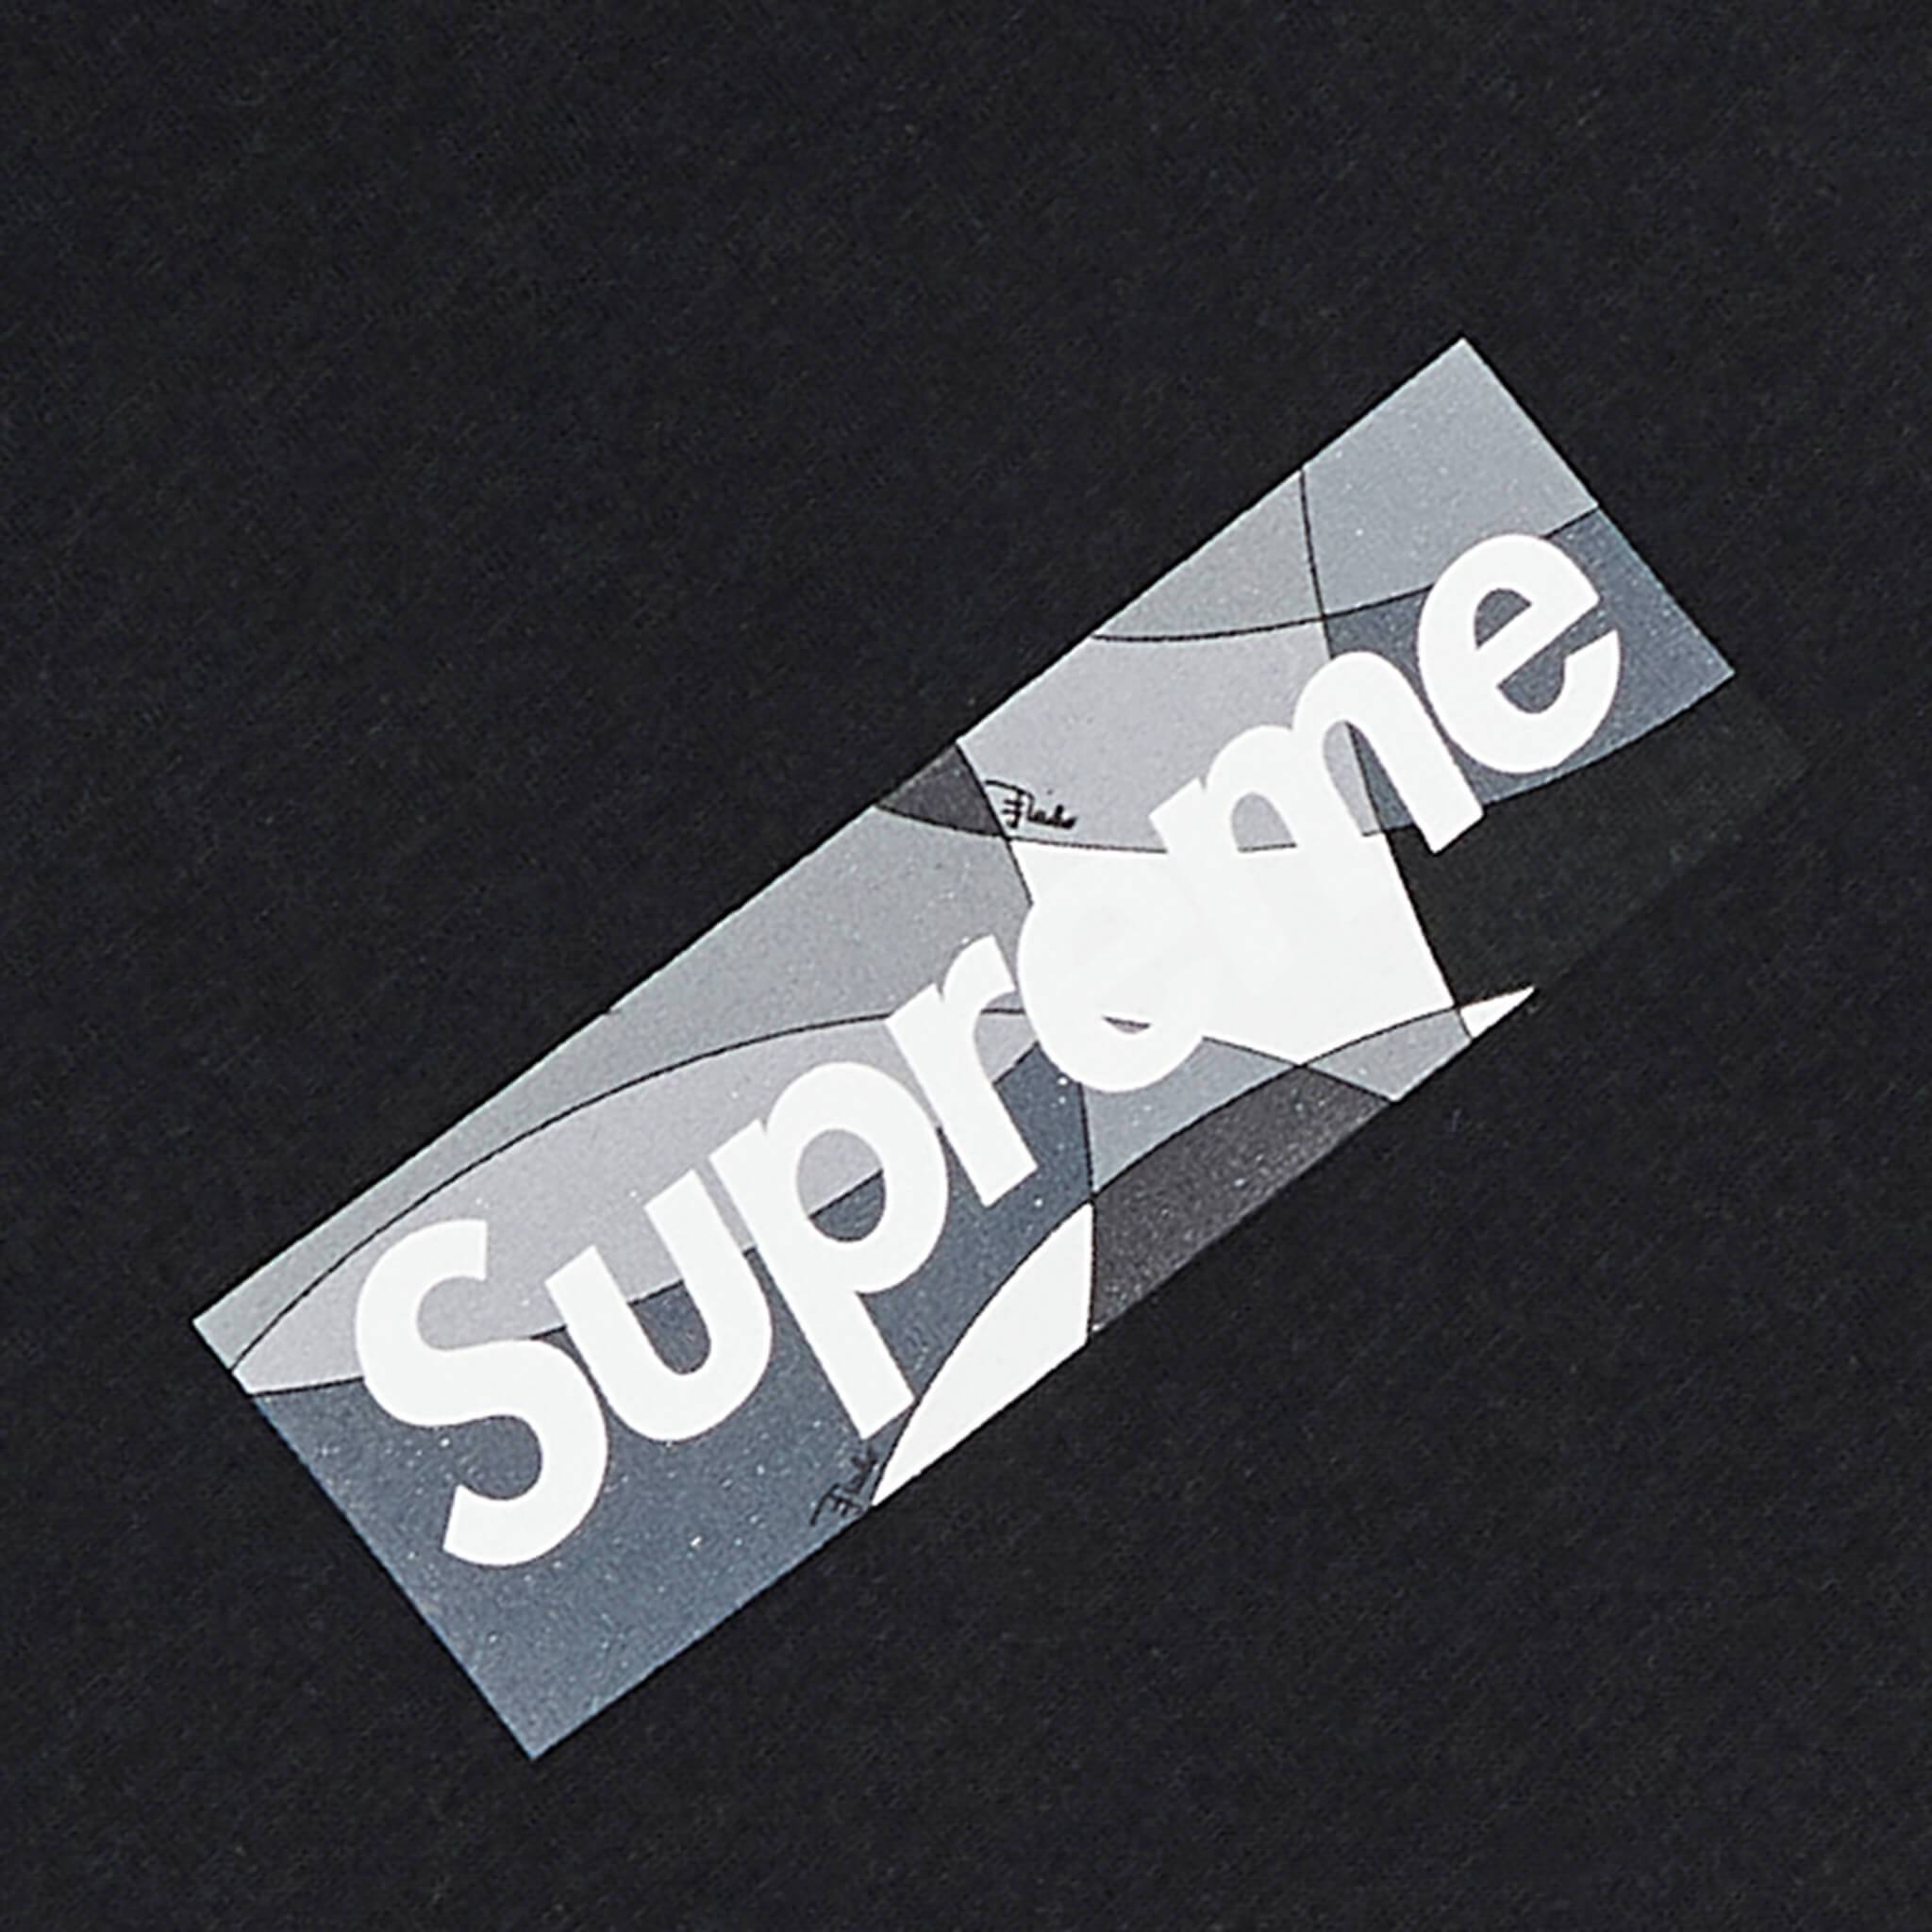 Supreme x Emilio Pucci Box Logo Tee 'White/Blue' | Men's Size XL